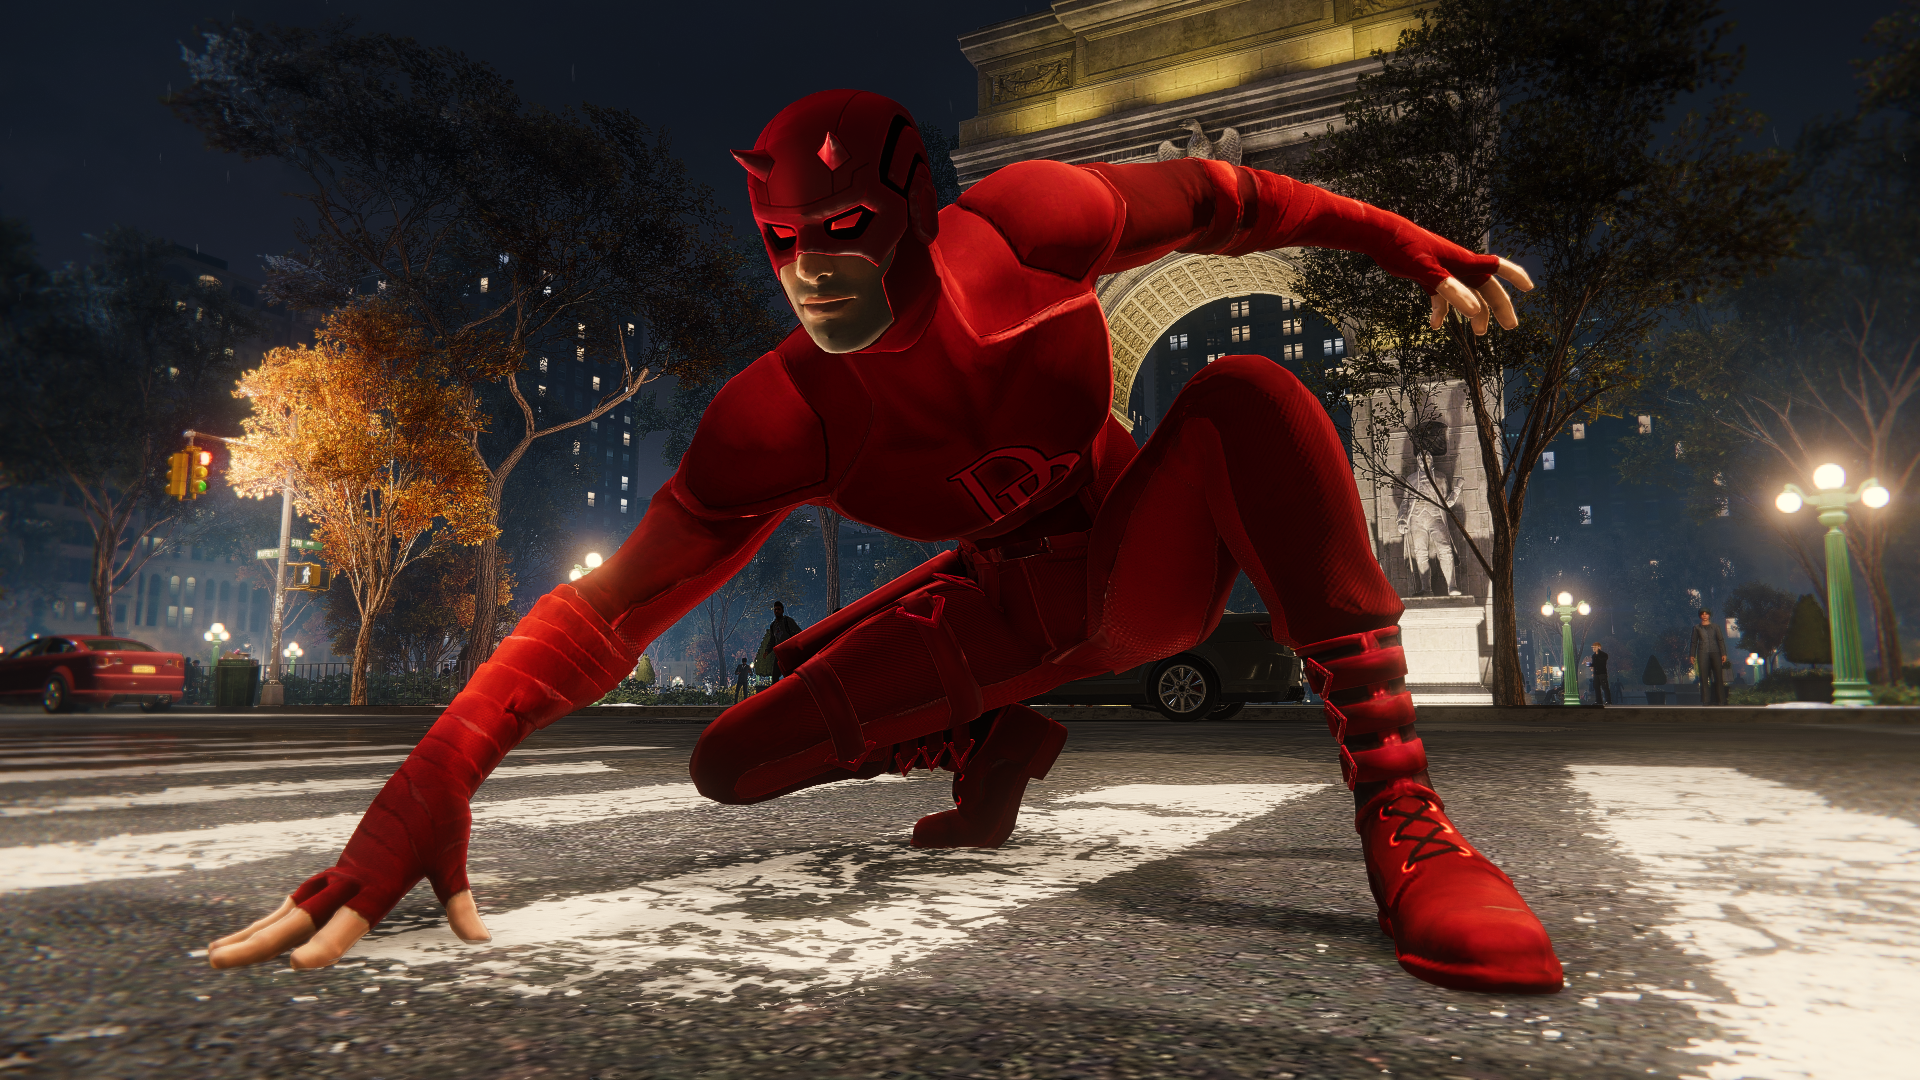 Temporizador mezcla Aleta New Daredevil Mod for Spider-Man Remastered Looks Epic! - Appuals.com